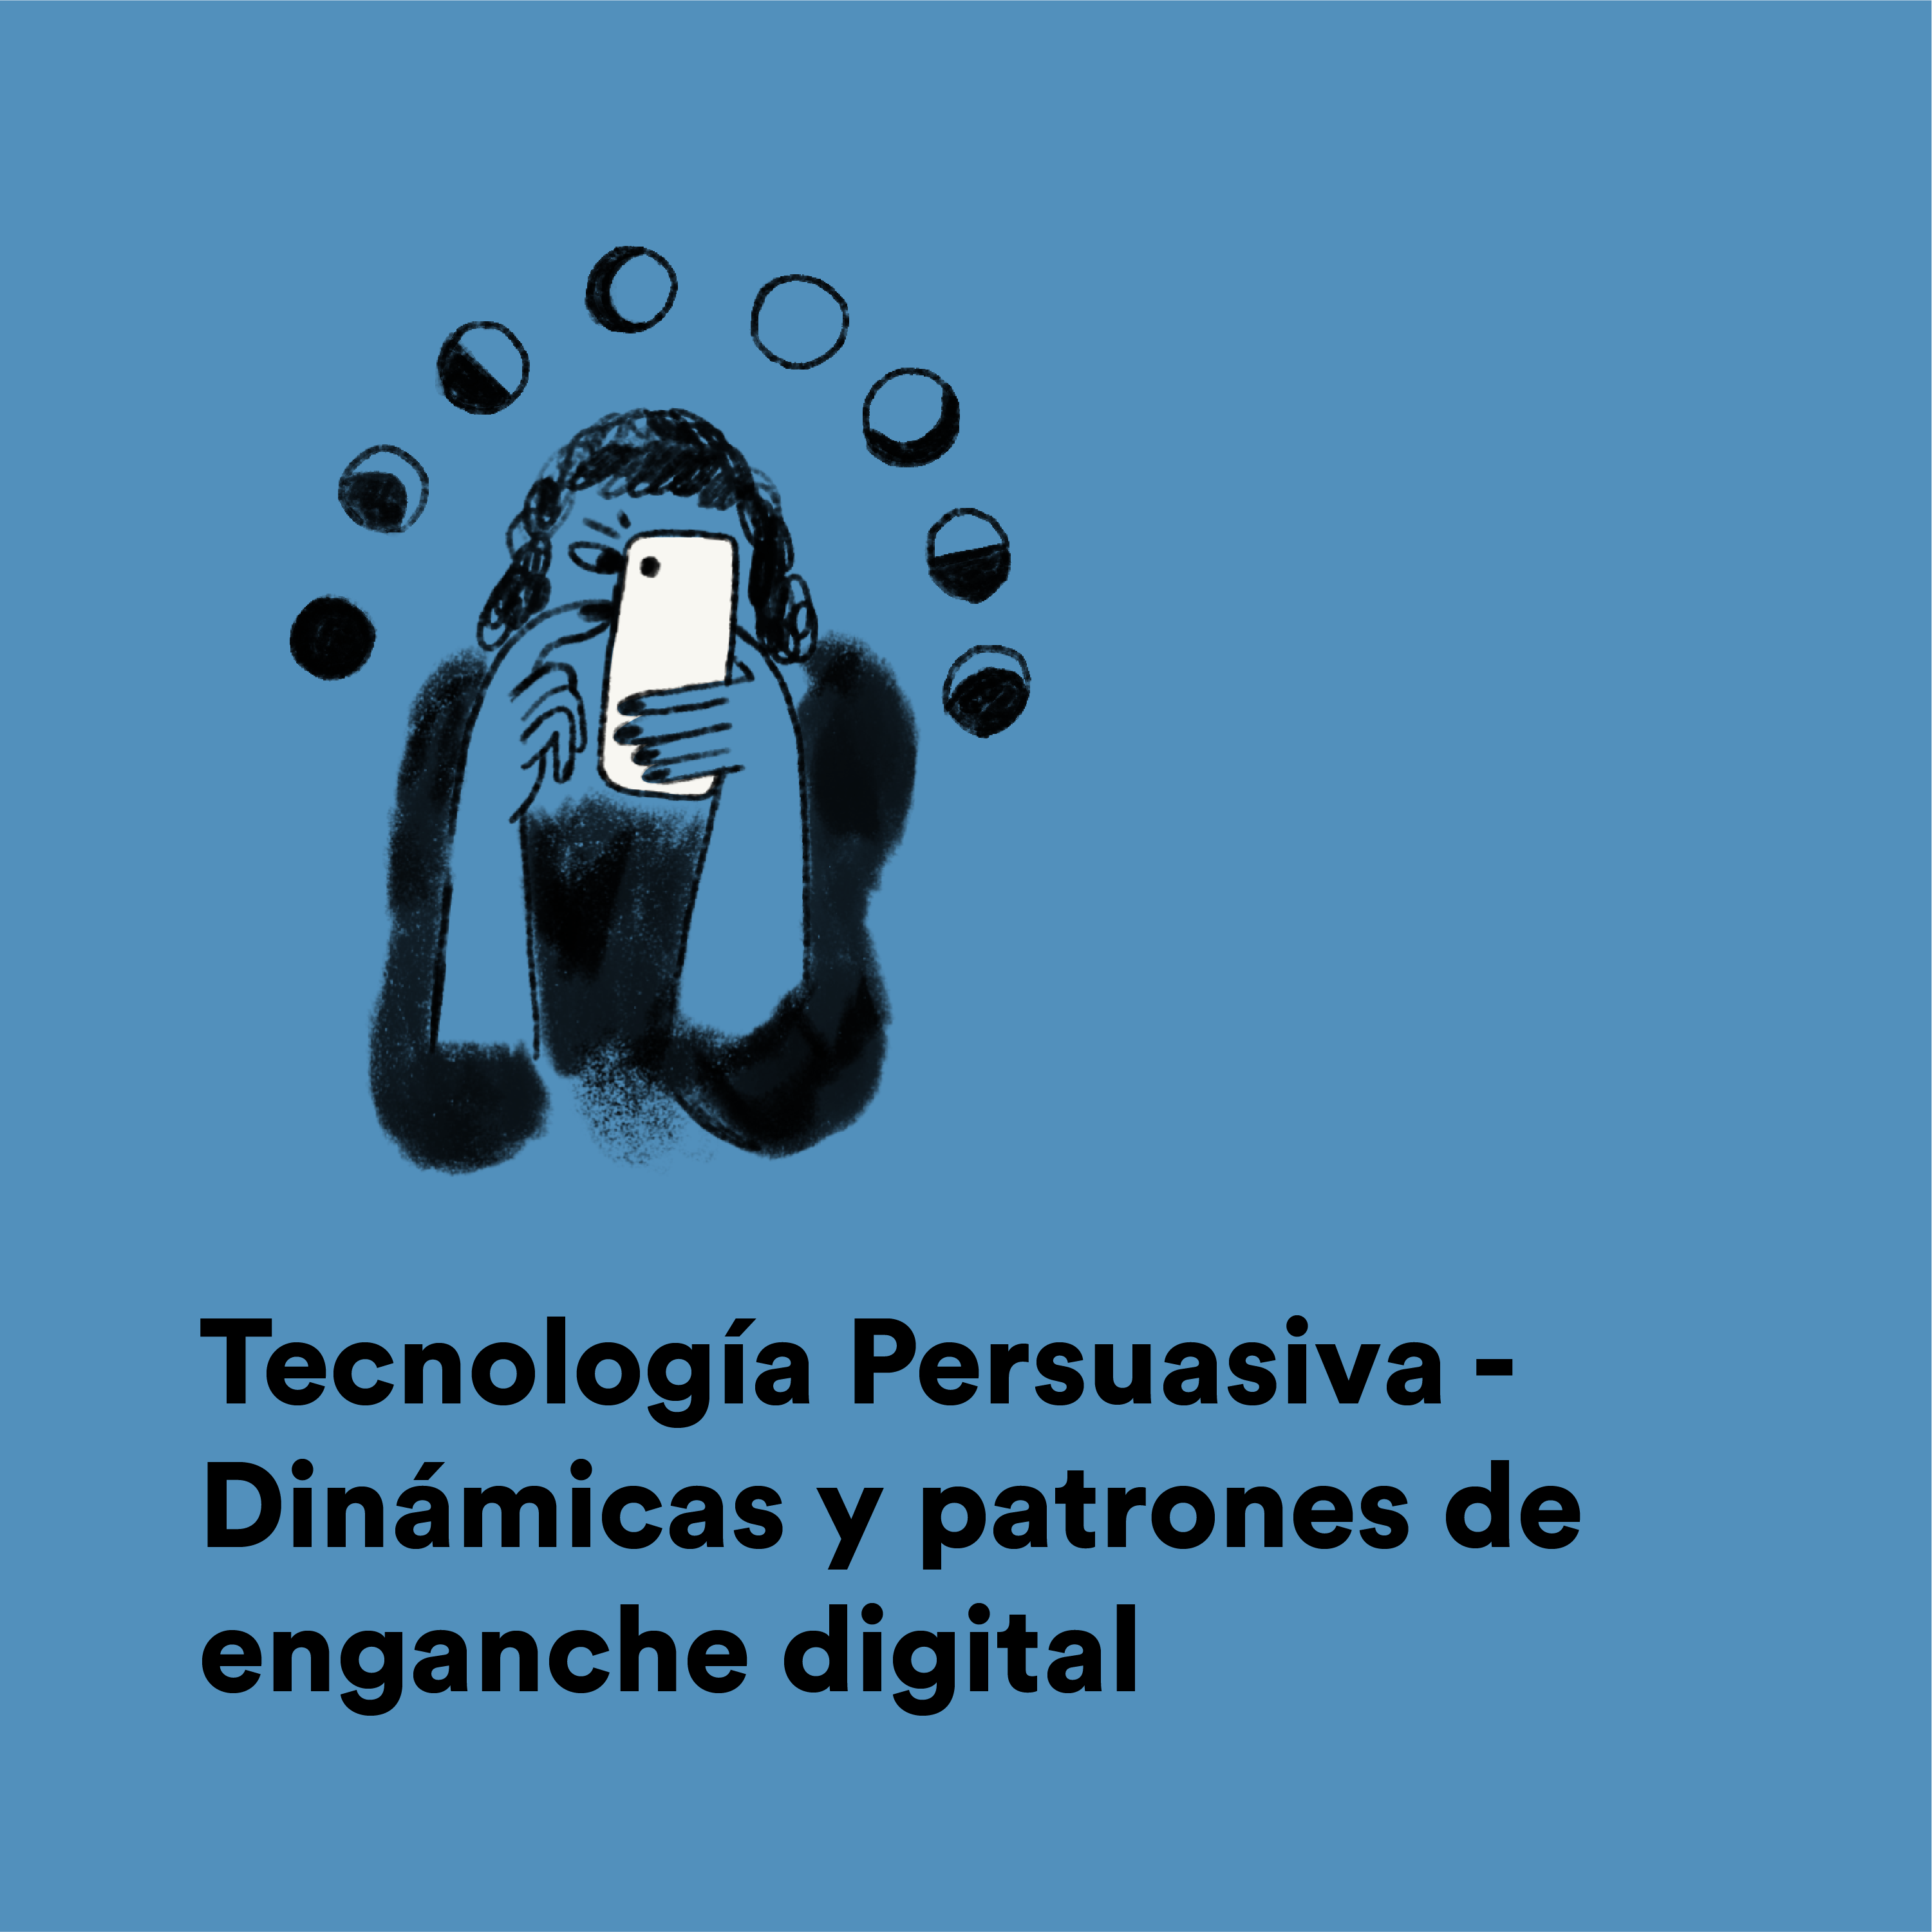 Tecnología Persuasiva - Dinámicas y patrones de enganche digital